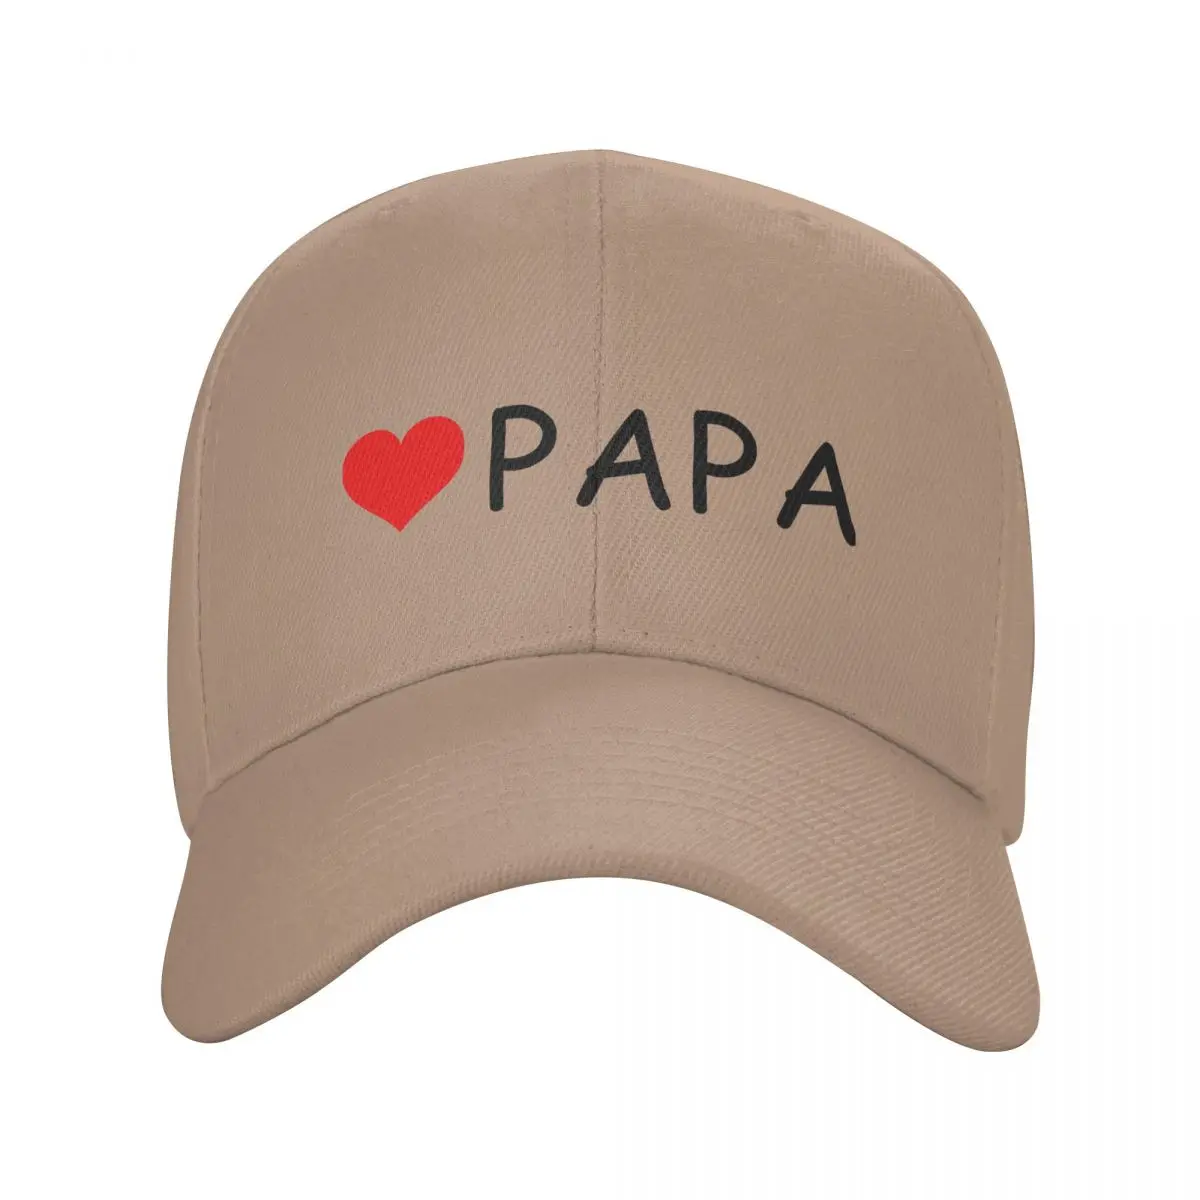 

Бейсболка Cool Love PAPA для мужчин и женщин, регулируемая индивидуализированная Кепка унисекс для папы, подарок на день рождения, уличная Кепка